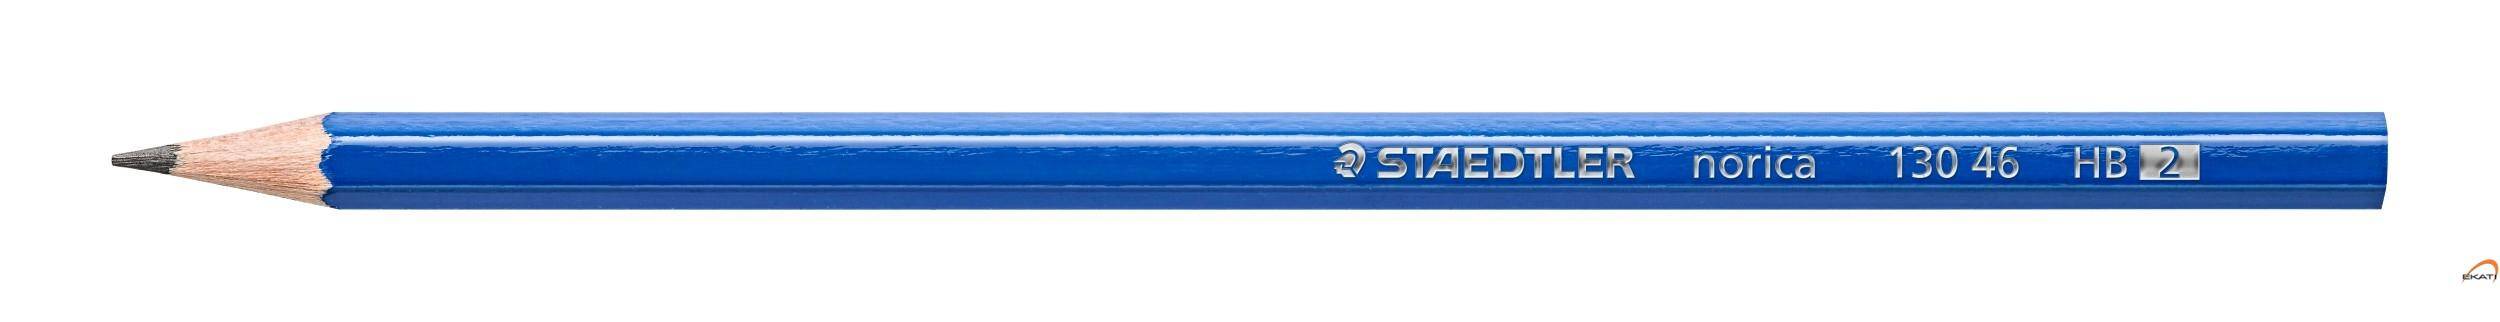 Ołówek NORICA S130-46 bez gumki